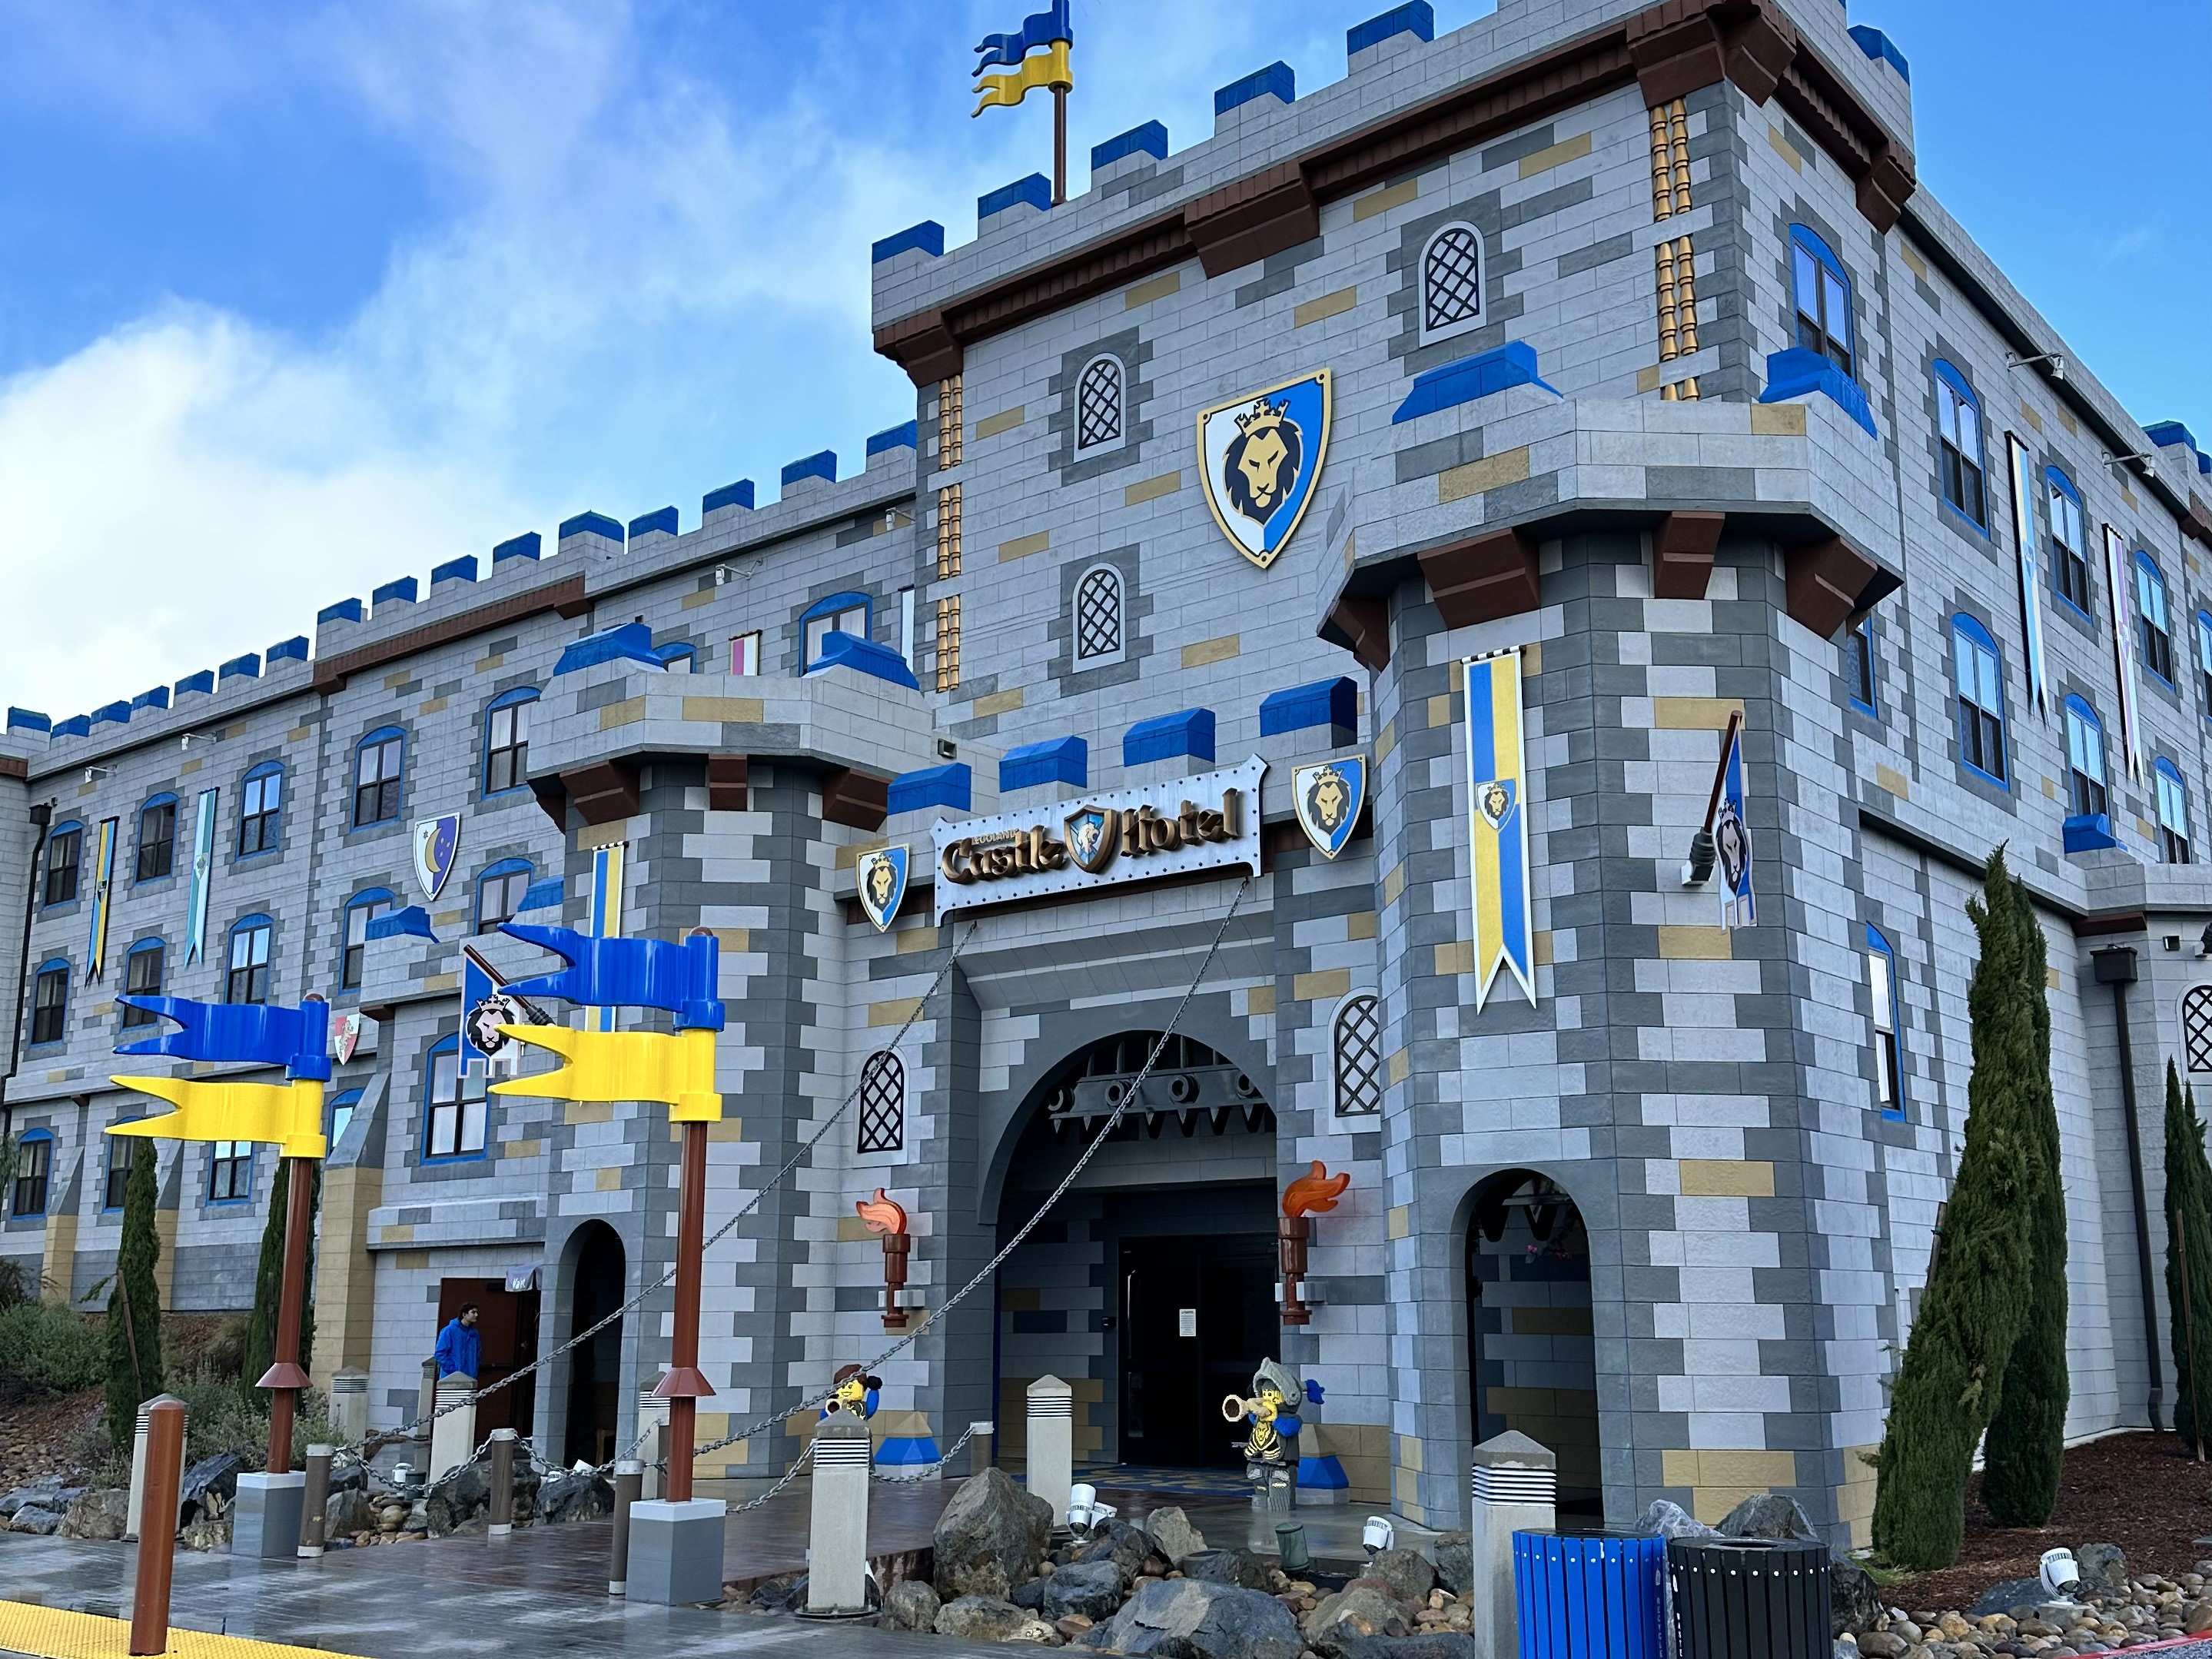 legoland castle hotel tour